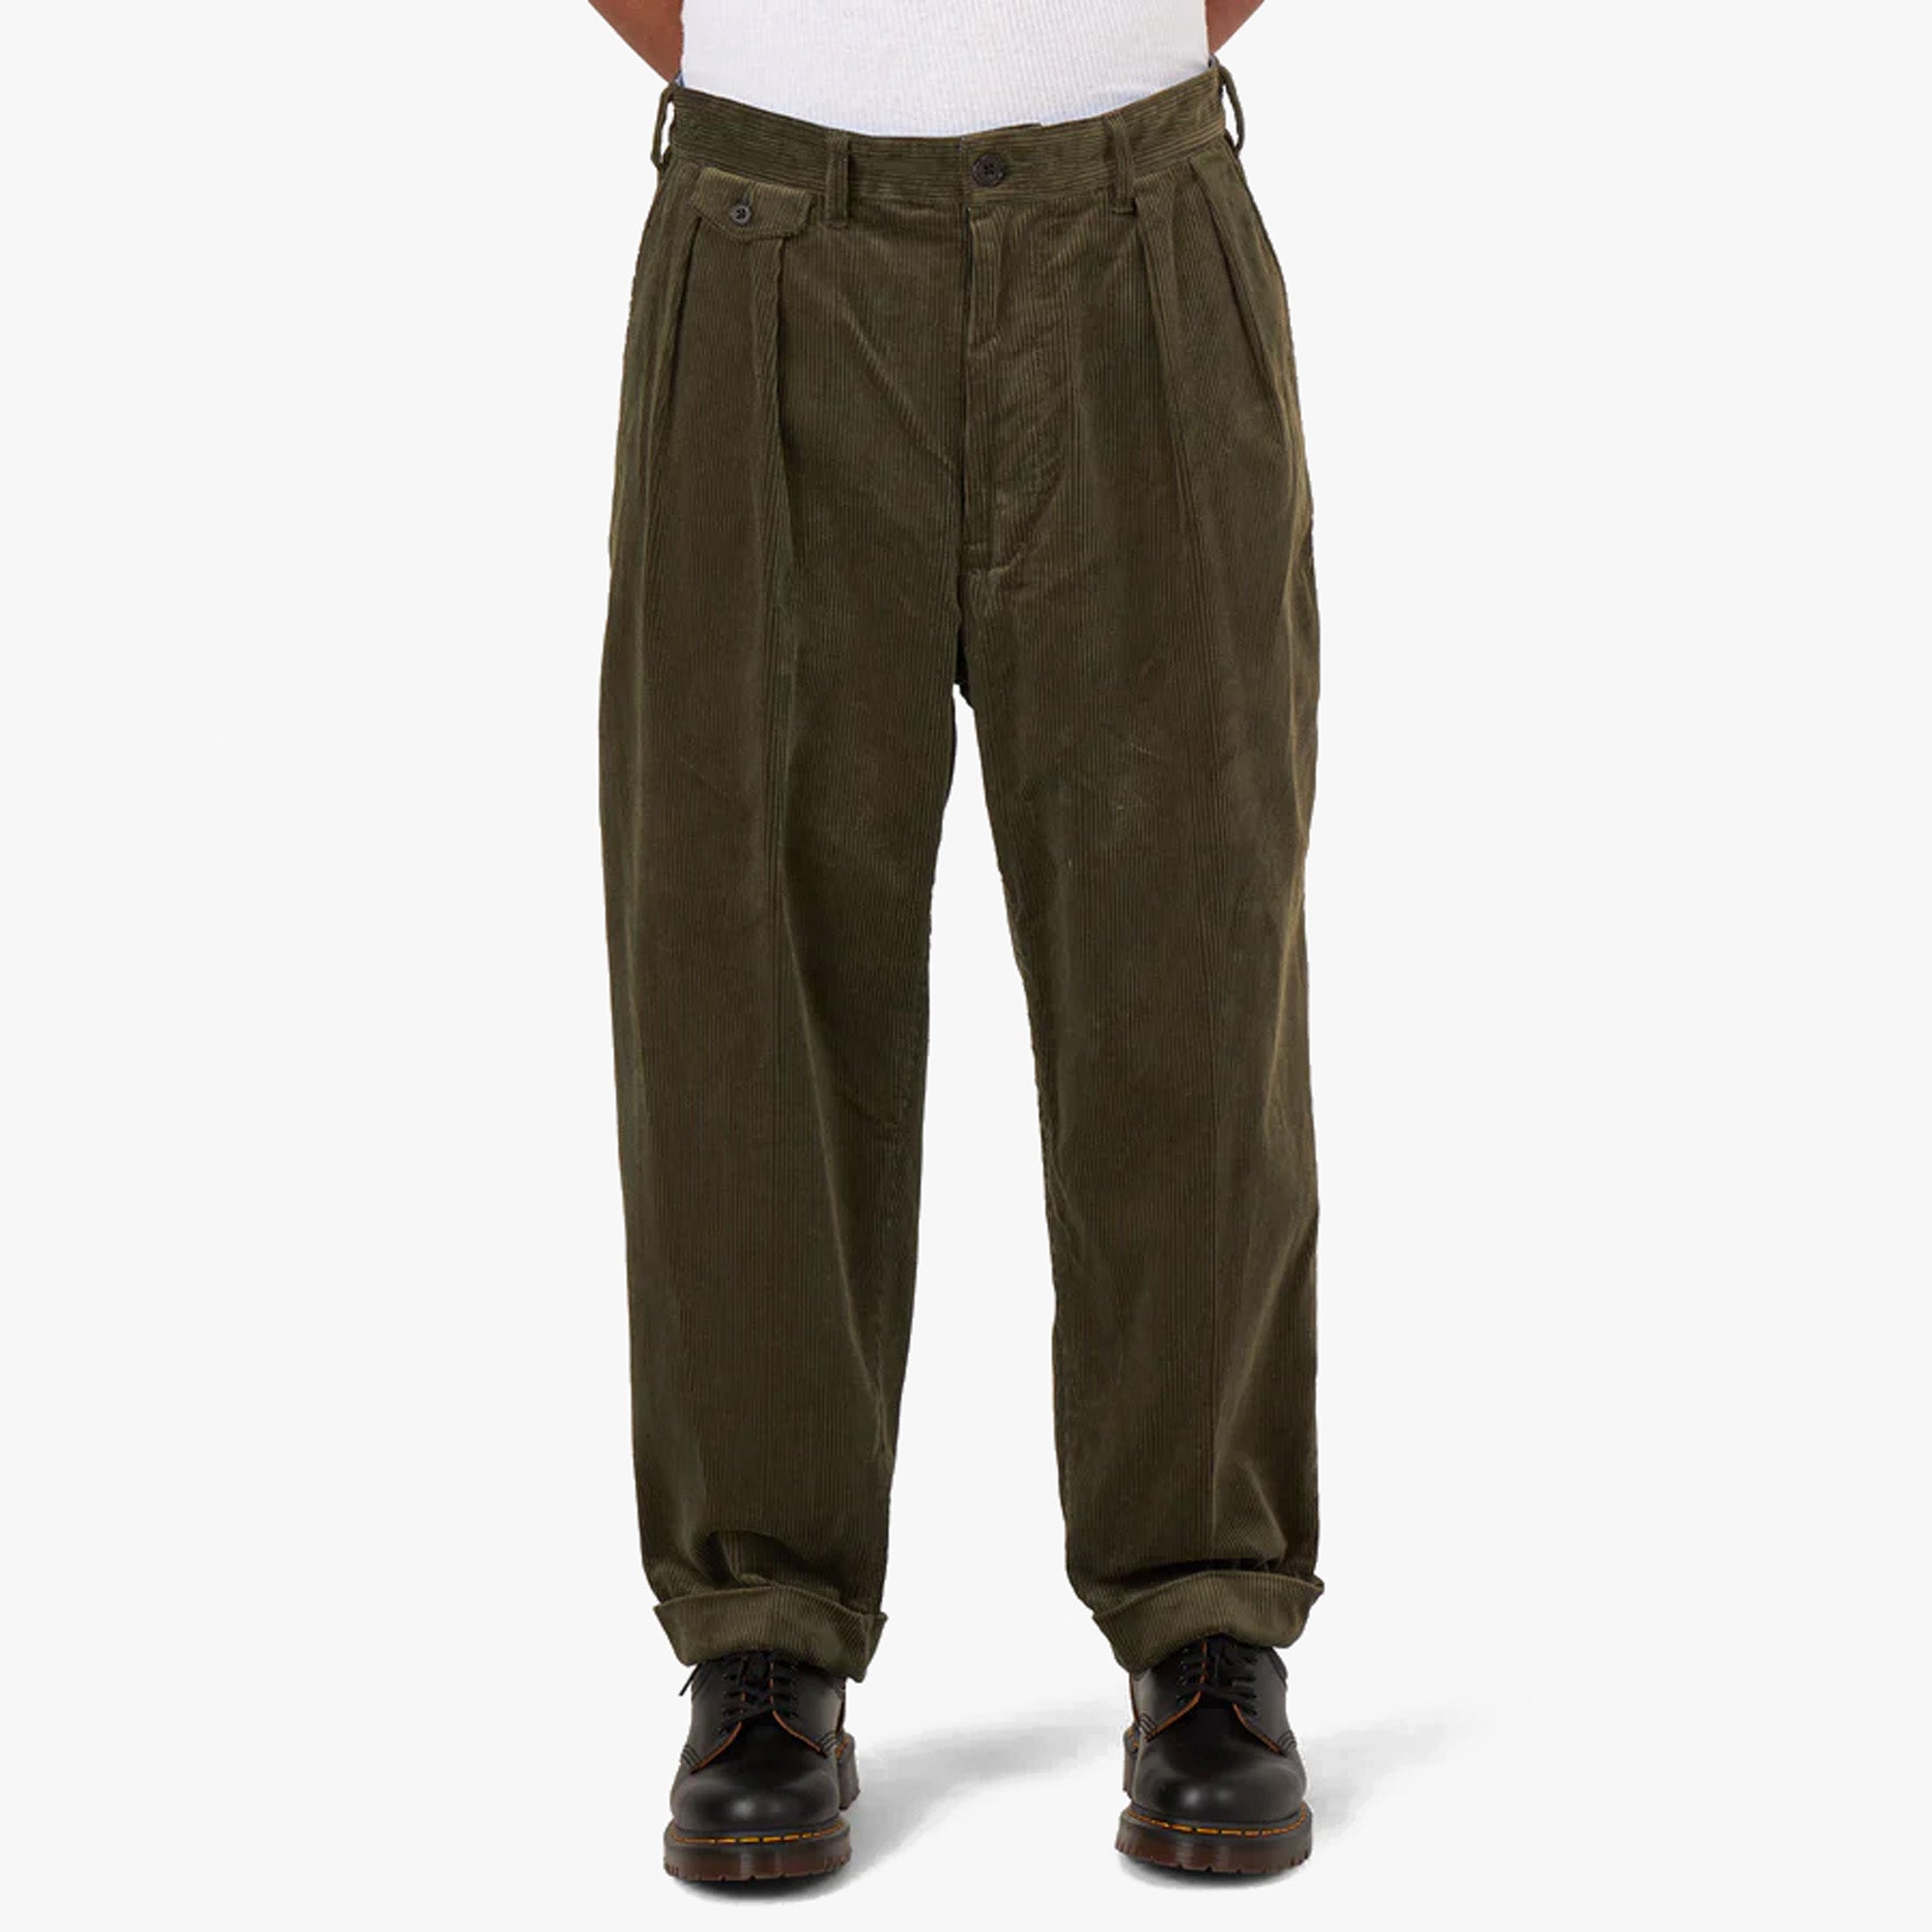 Tooling American Vintage Corduroy Loose Casual Men's Trousers | Mens  trousers casual, Mens work pants, Corduroy pants men